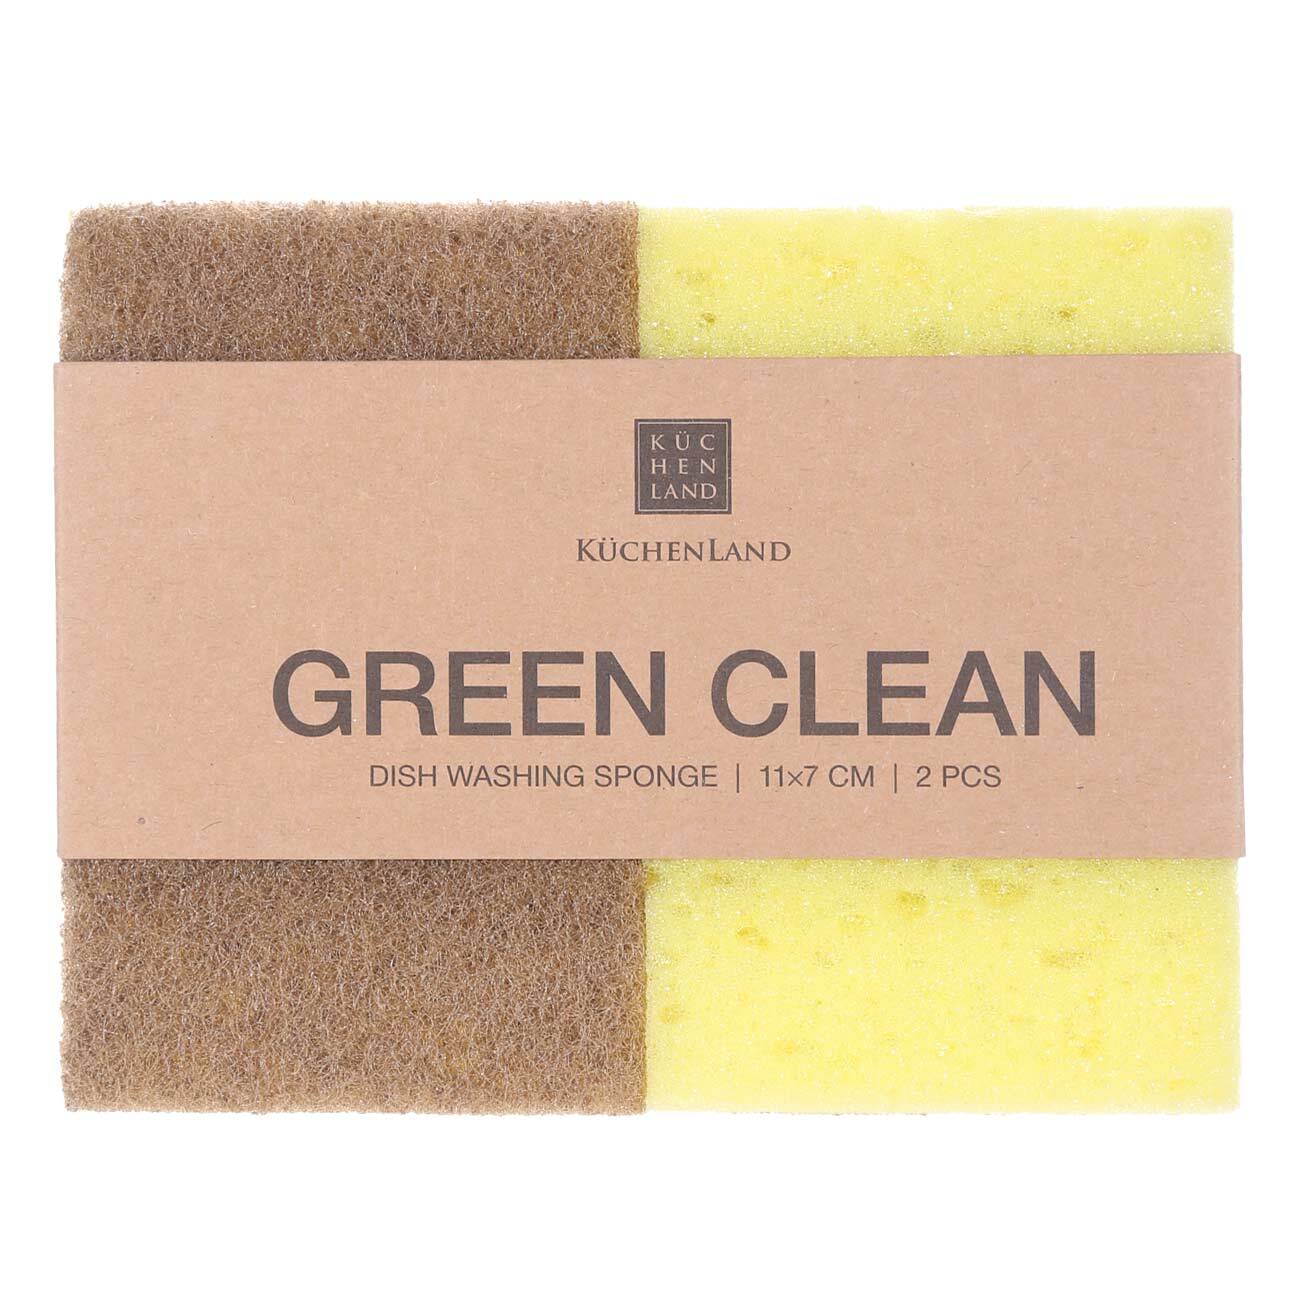 Dish washing sponge, 11x7 cm, 2 pcs, wood fiber/sisal, beige, Green clean изображение № 1